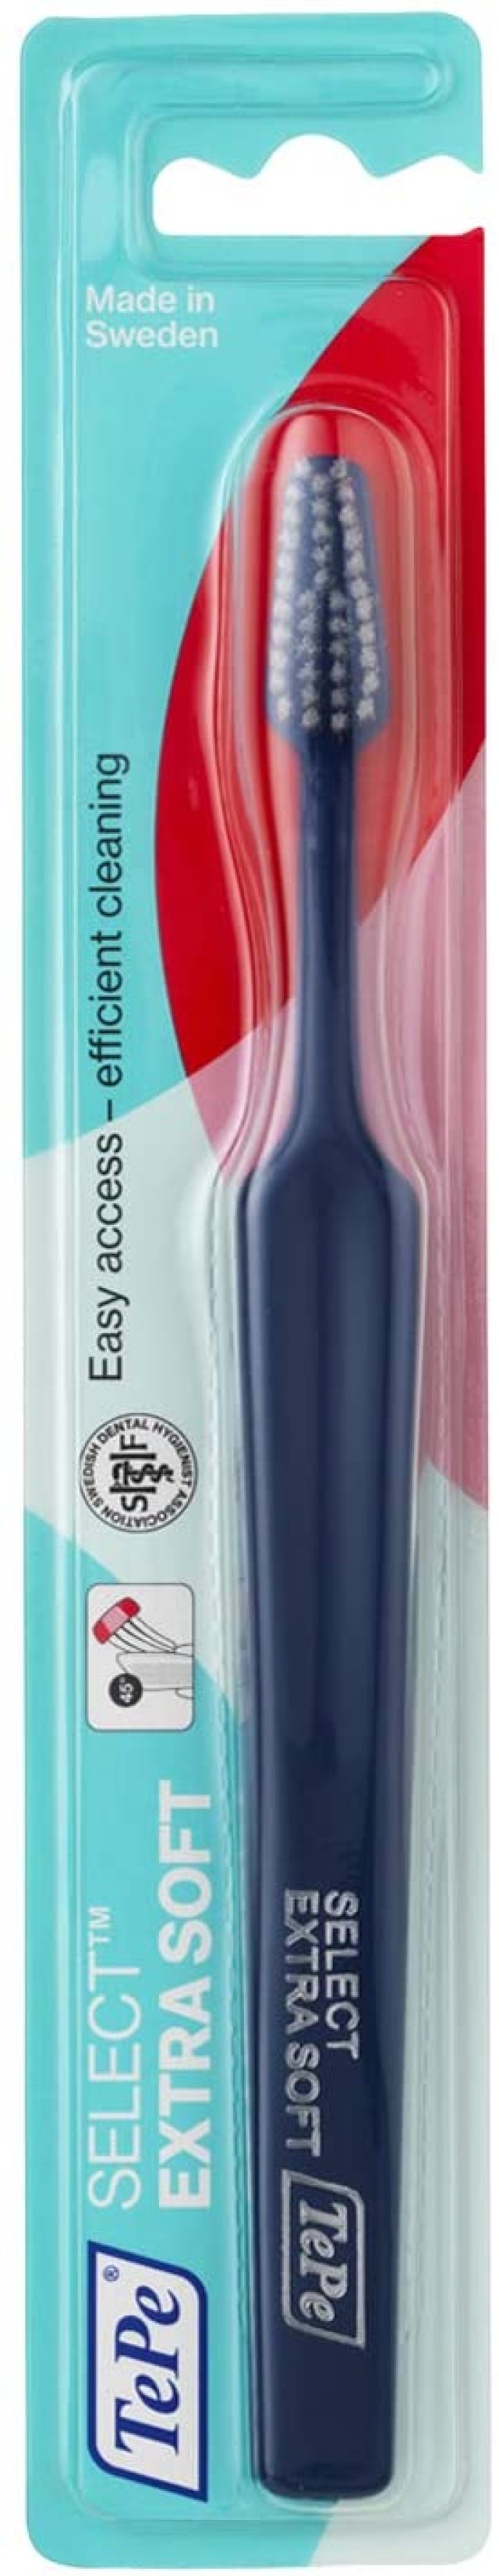 TePe Select Extra Soft Οδοντόβουρτσα Χρώμα Μπλε, 1 τεμάχιο